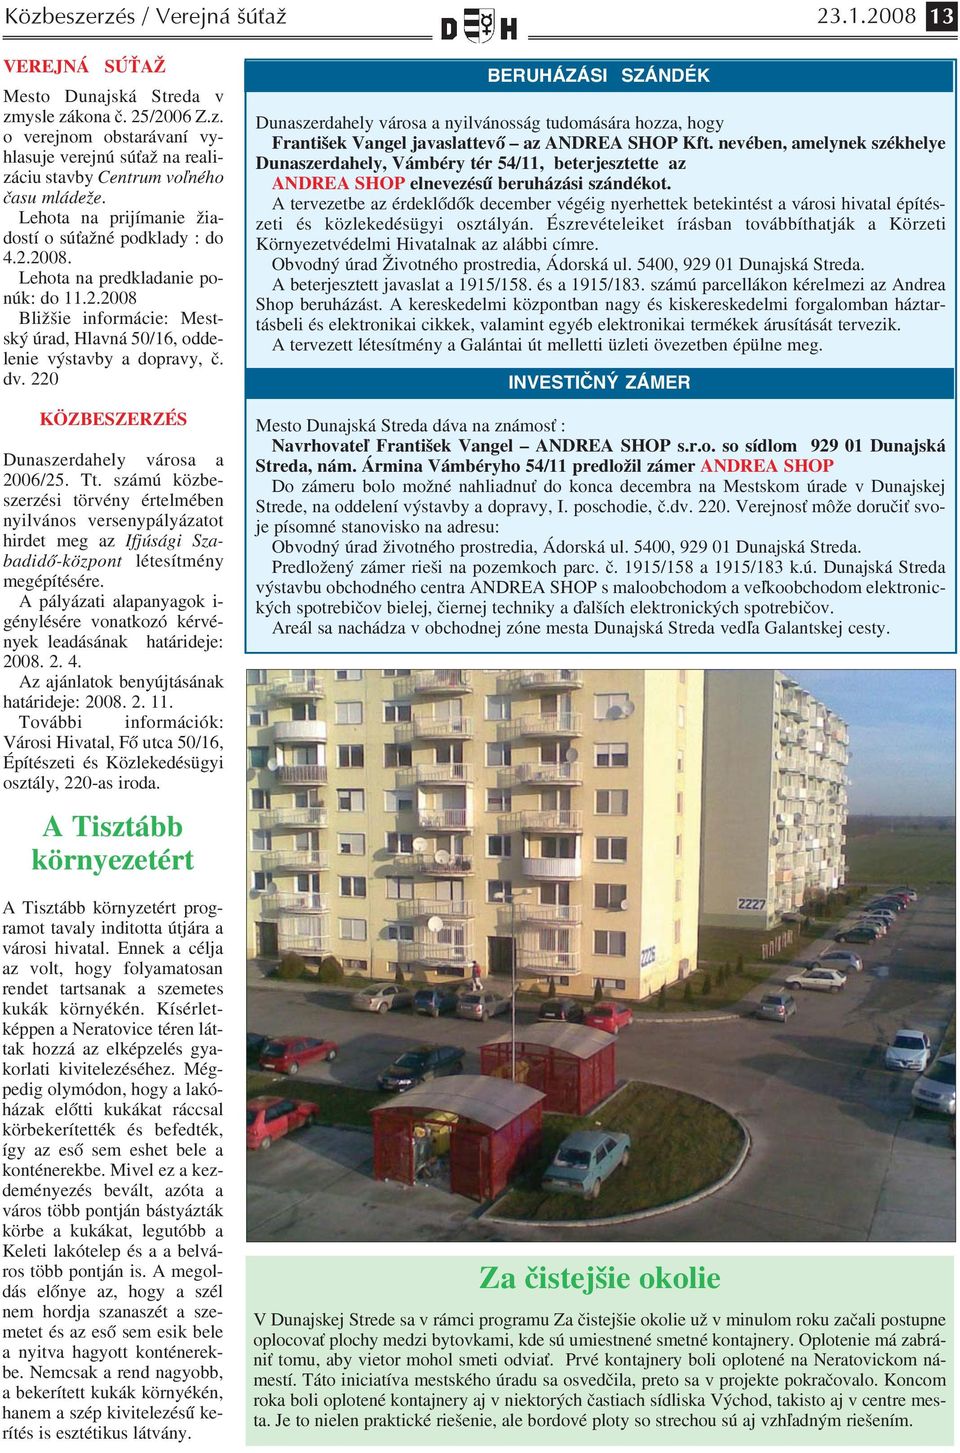 220 KÖZBESZERZÉS Dunaszerdahely városa a 2006/25. Tt. számú közbe szerzési törvény értelmében nyilvános versenypályázatot hirdet meg az Ifjúsági Sza badidő központ létesítmény megépítésére.